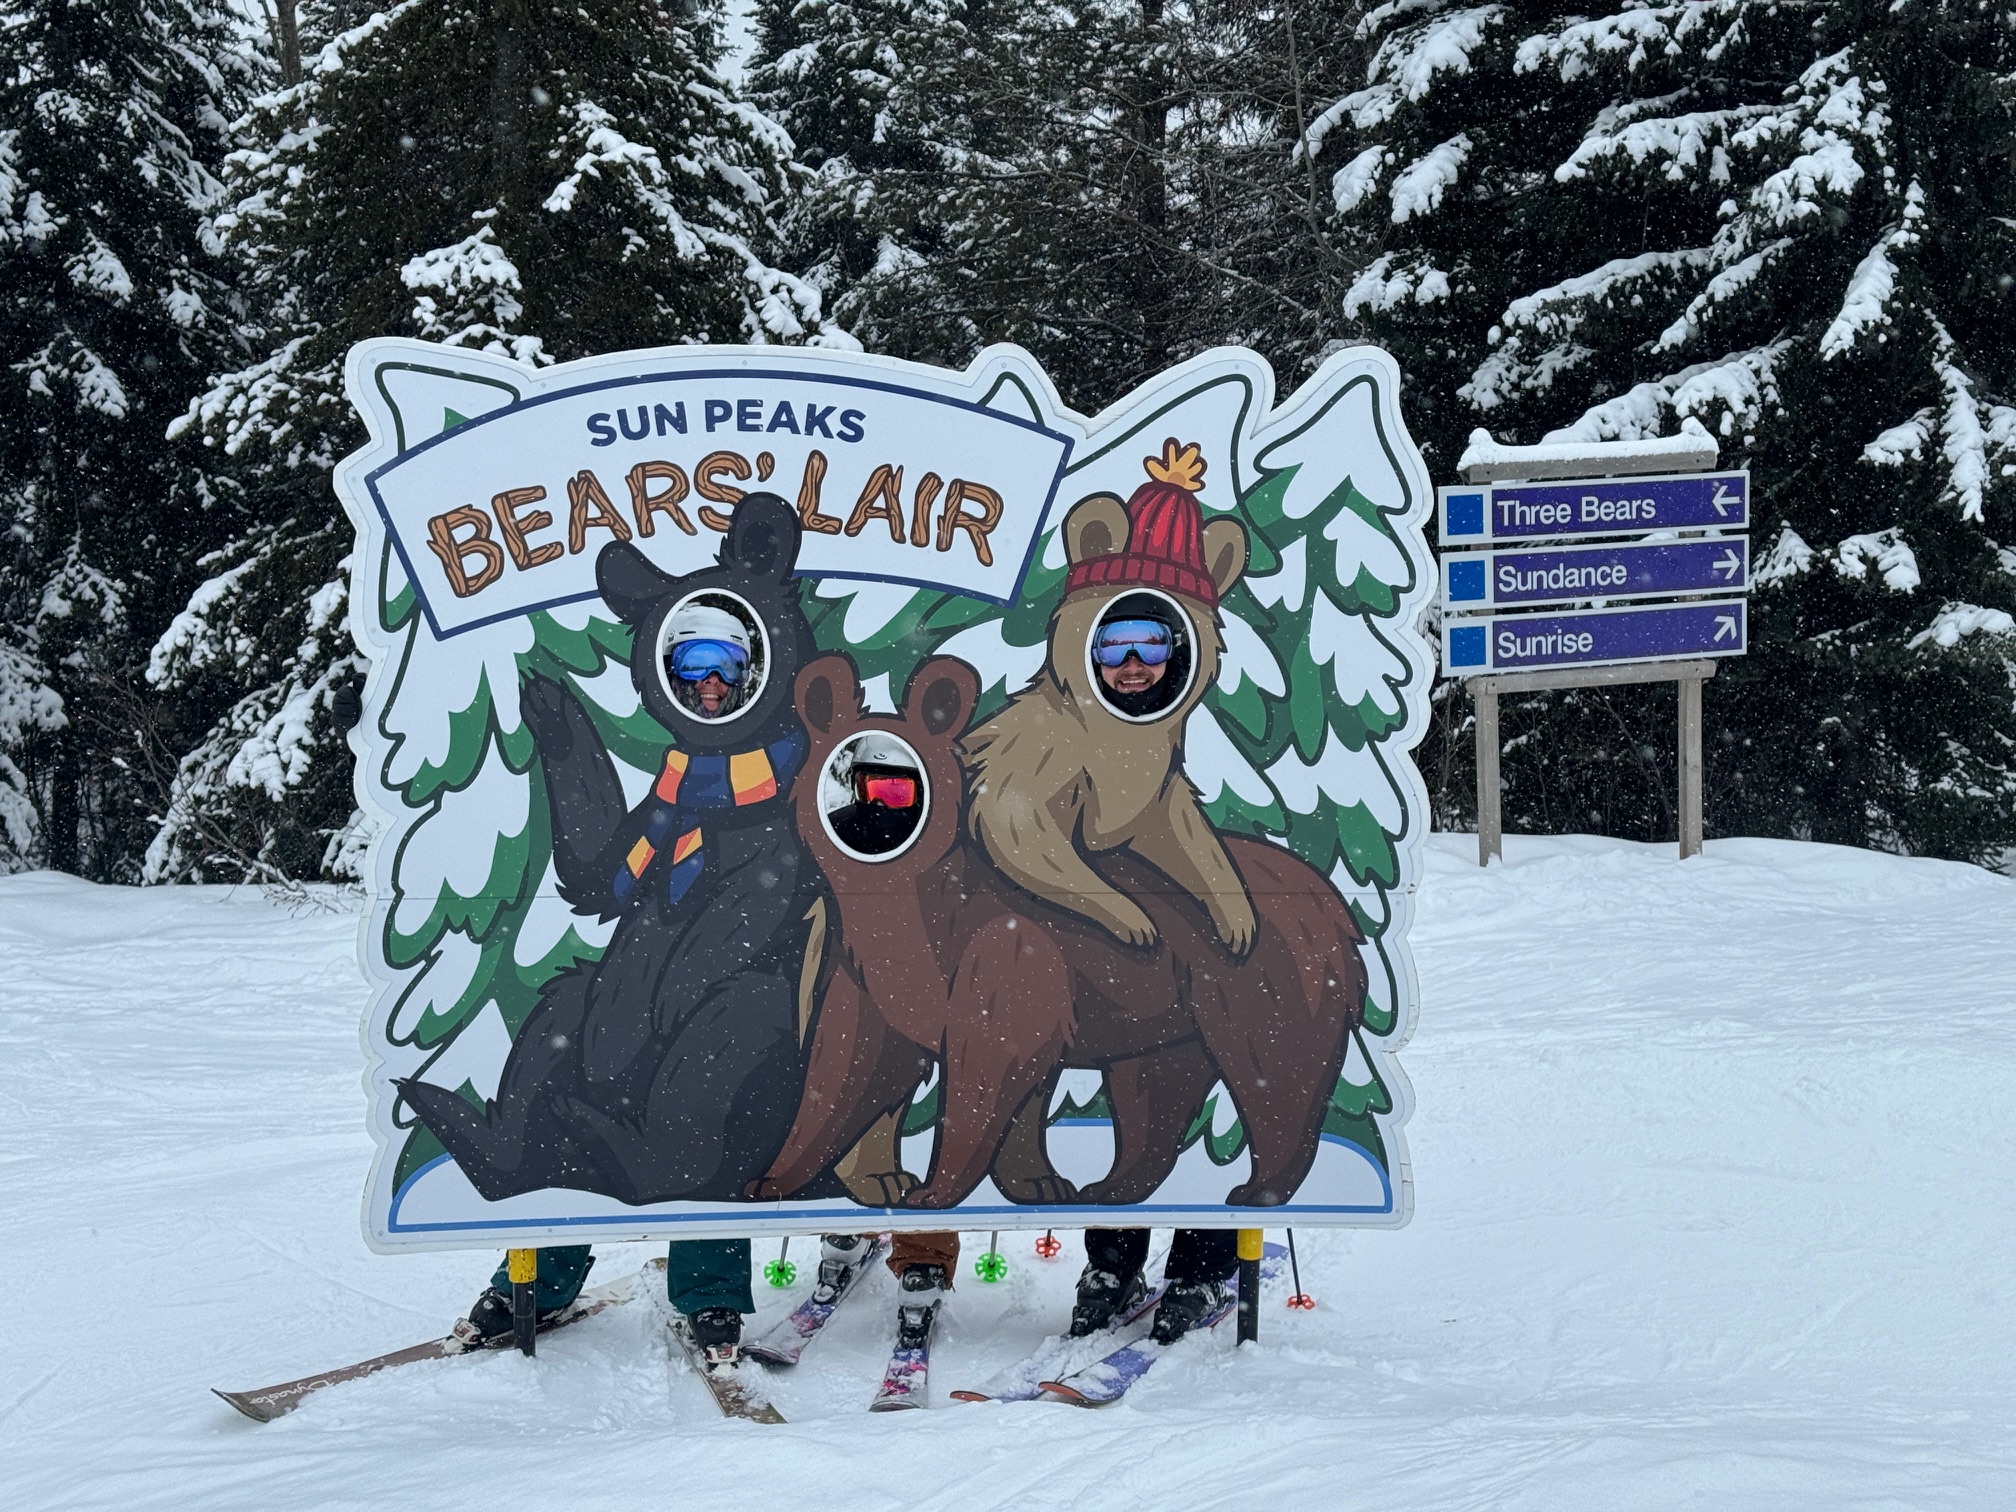 Bears Lair on Three Bears, Sun Peaks